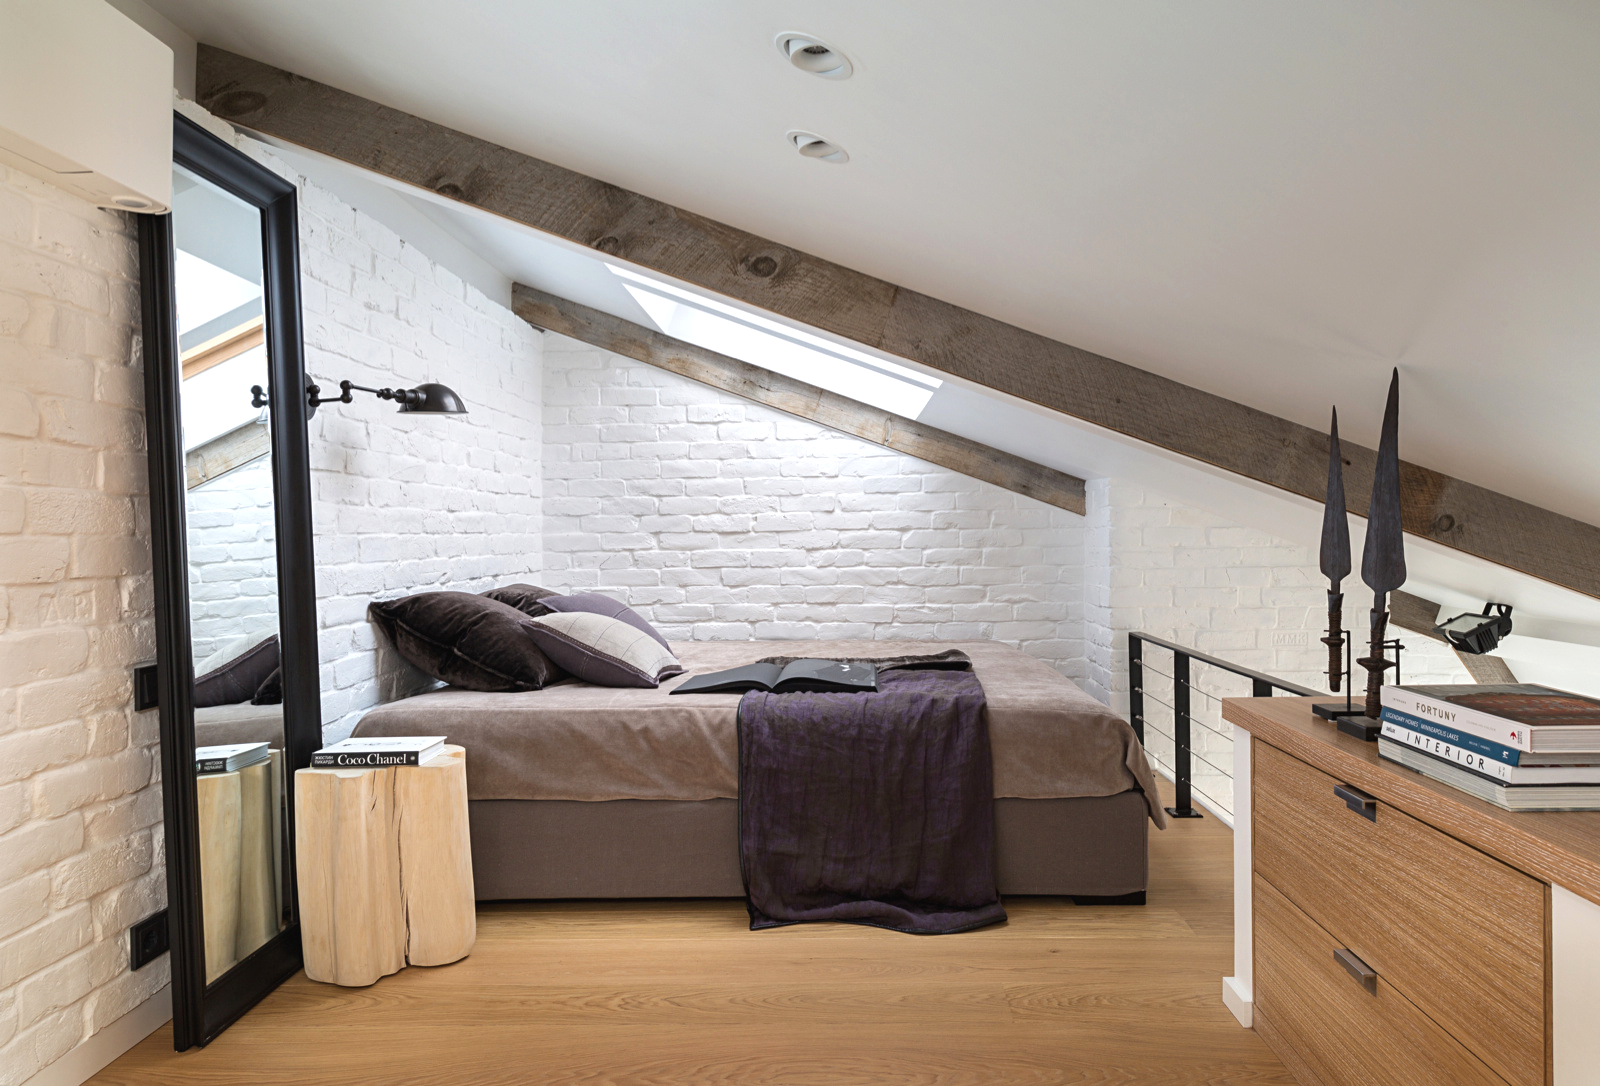 Светлая мансардная спальня с прикроватным светильником, закрепленным на стене над кроватью